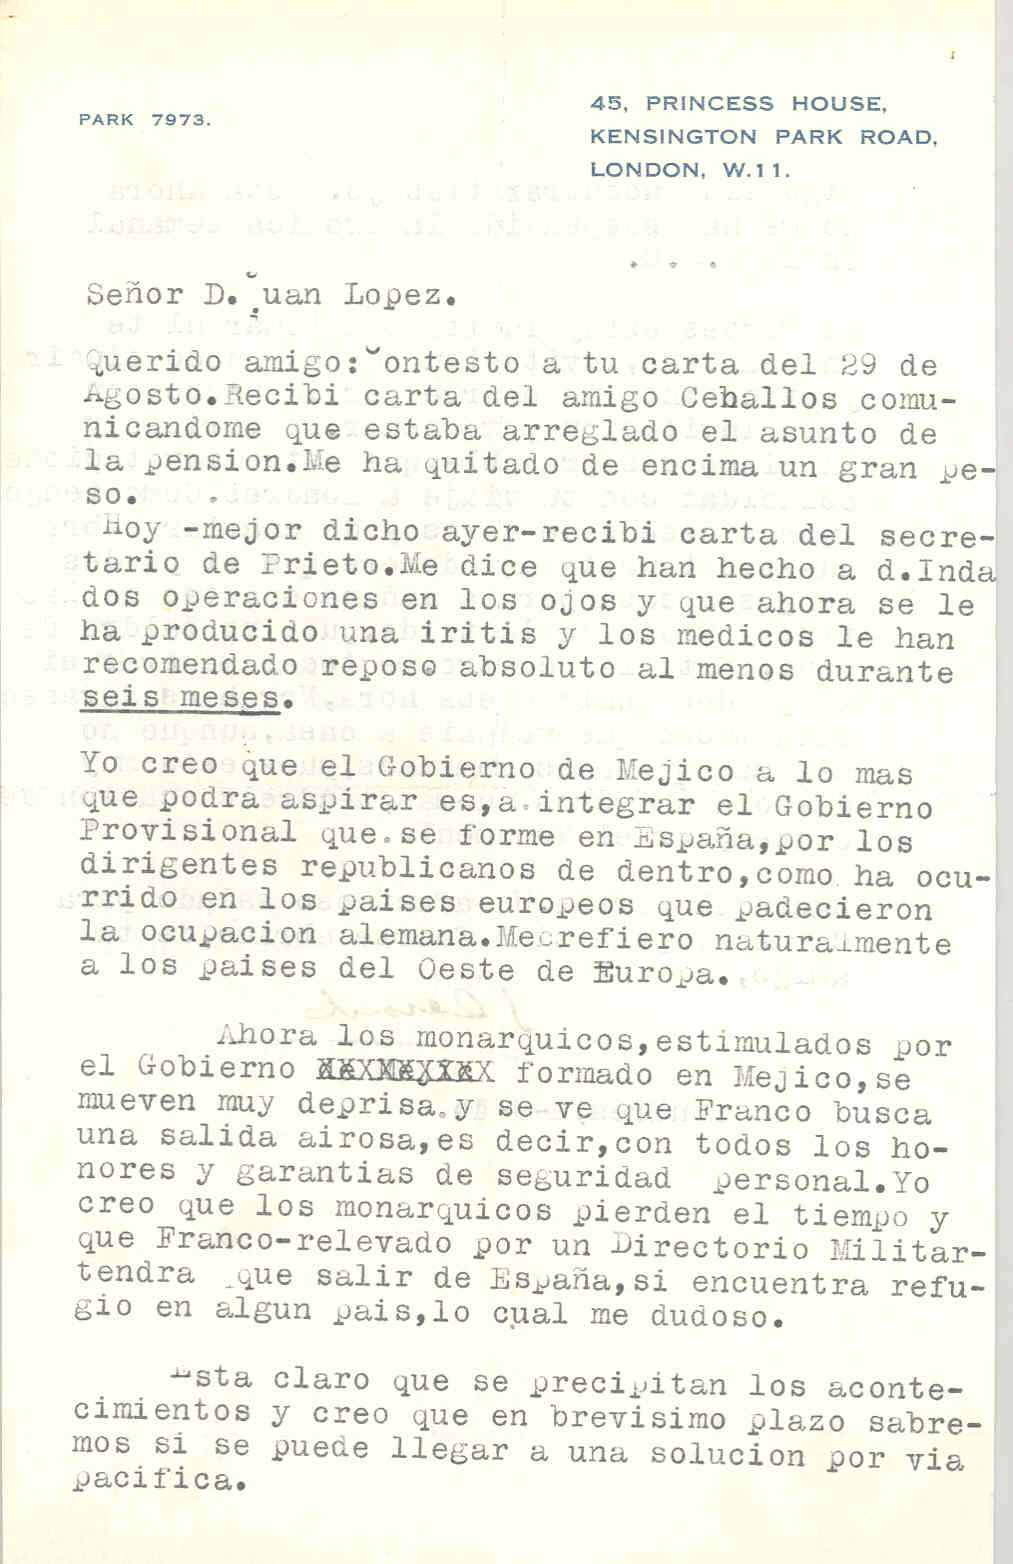 Carta de Segismundo Casado opinando sobre las aspiraciones del gobierno de México y las reacciones de los monárquicos y Franco.